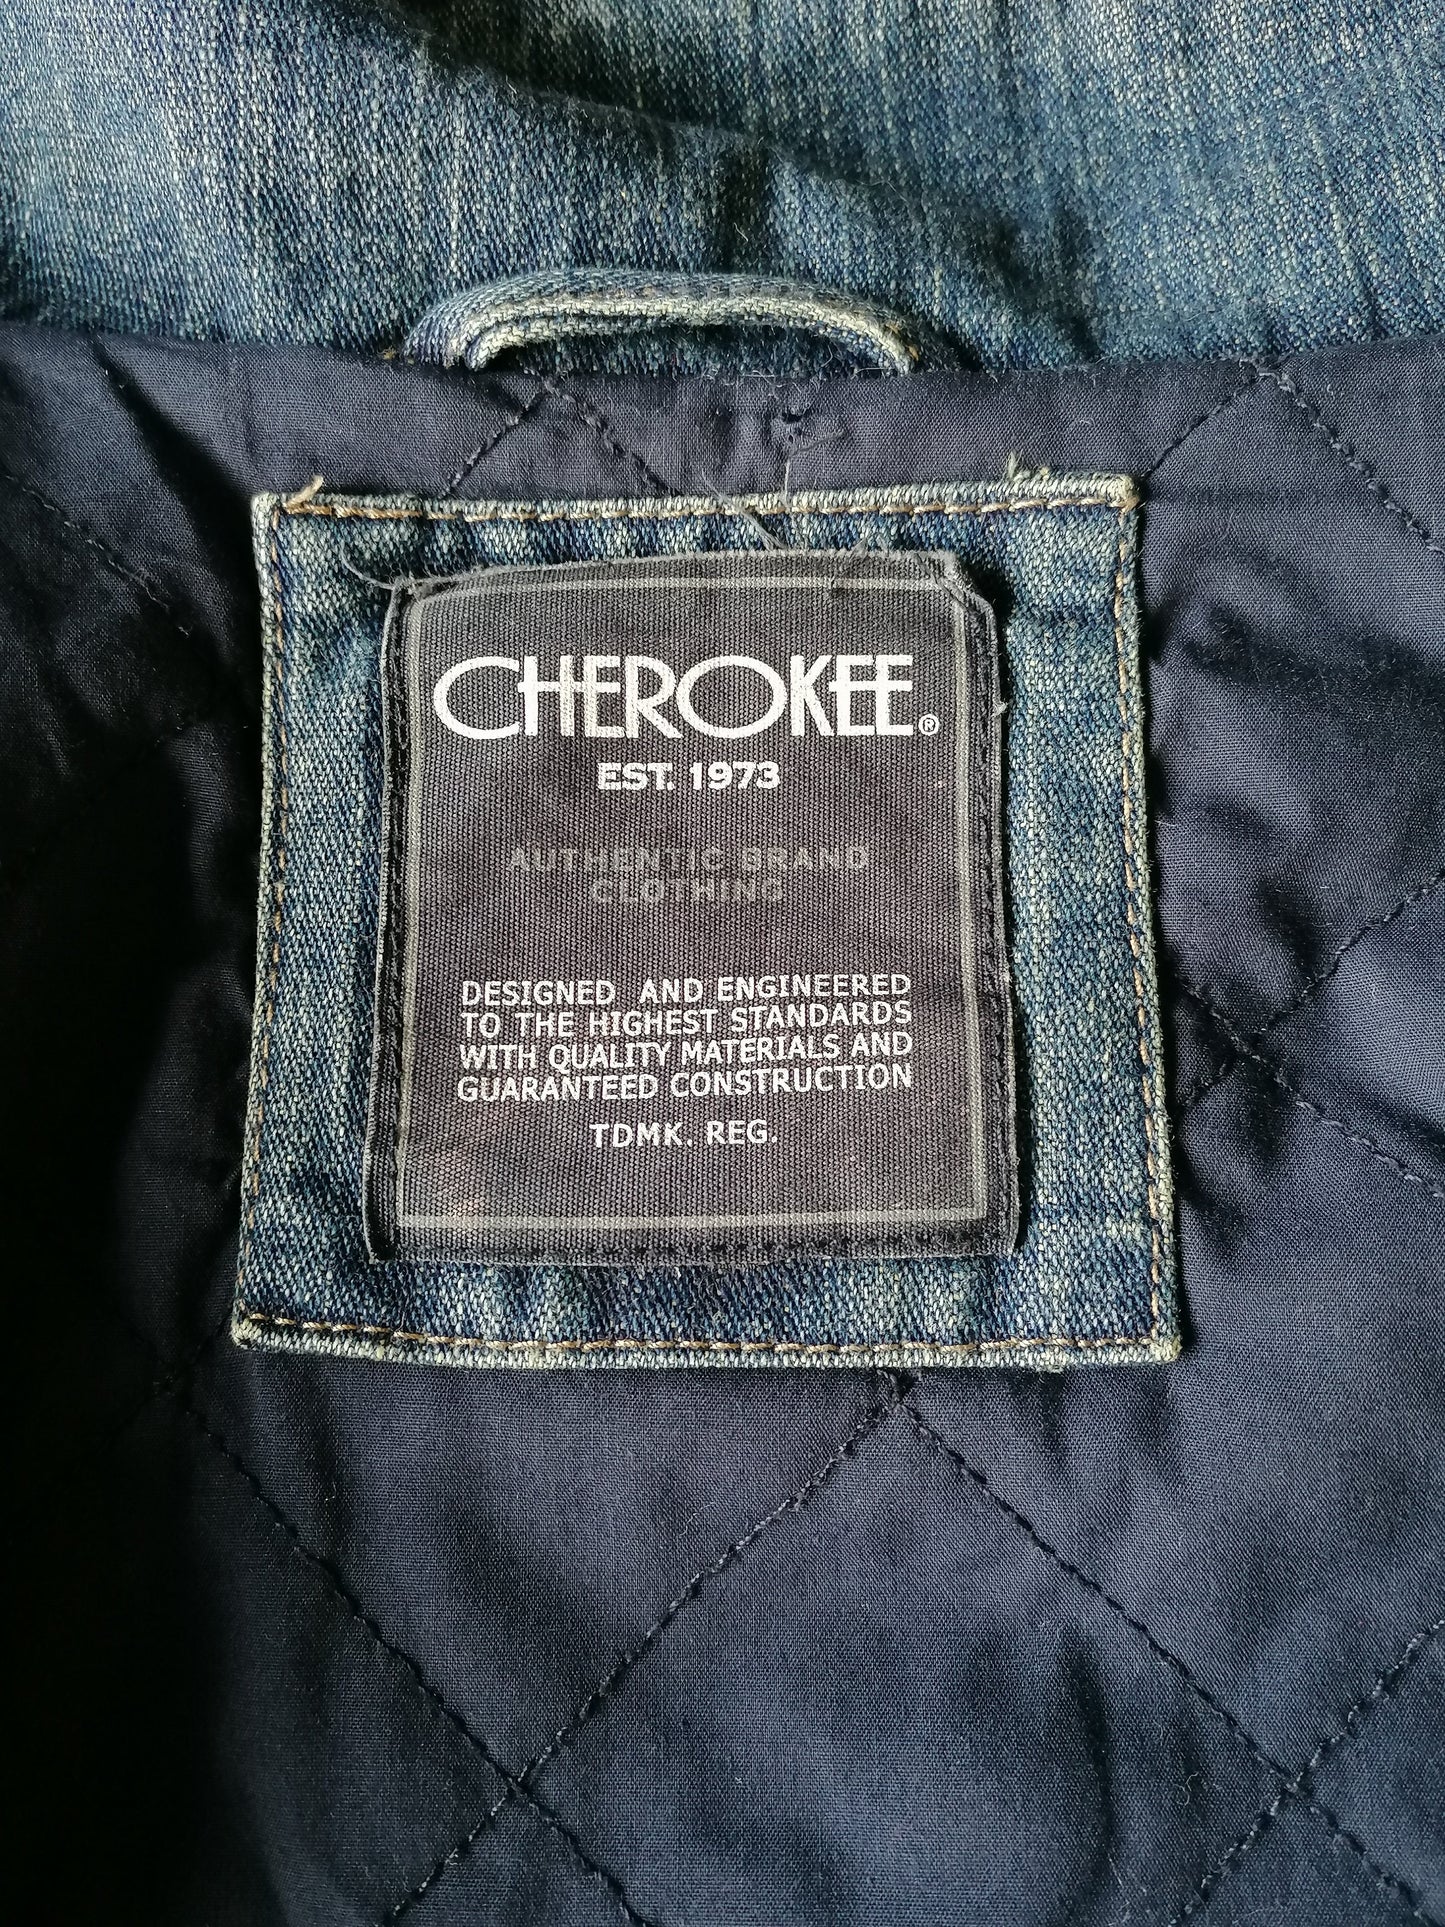 Vintage Cherokee Spijkerjack. Licht gevoerd. Blauw gekleurd. Maat S.